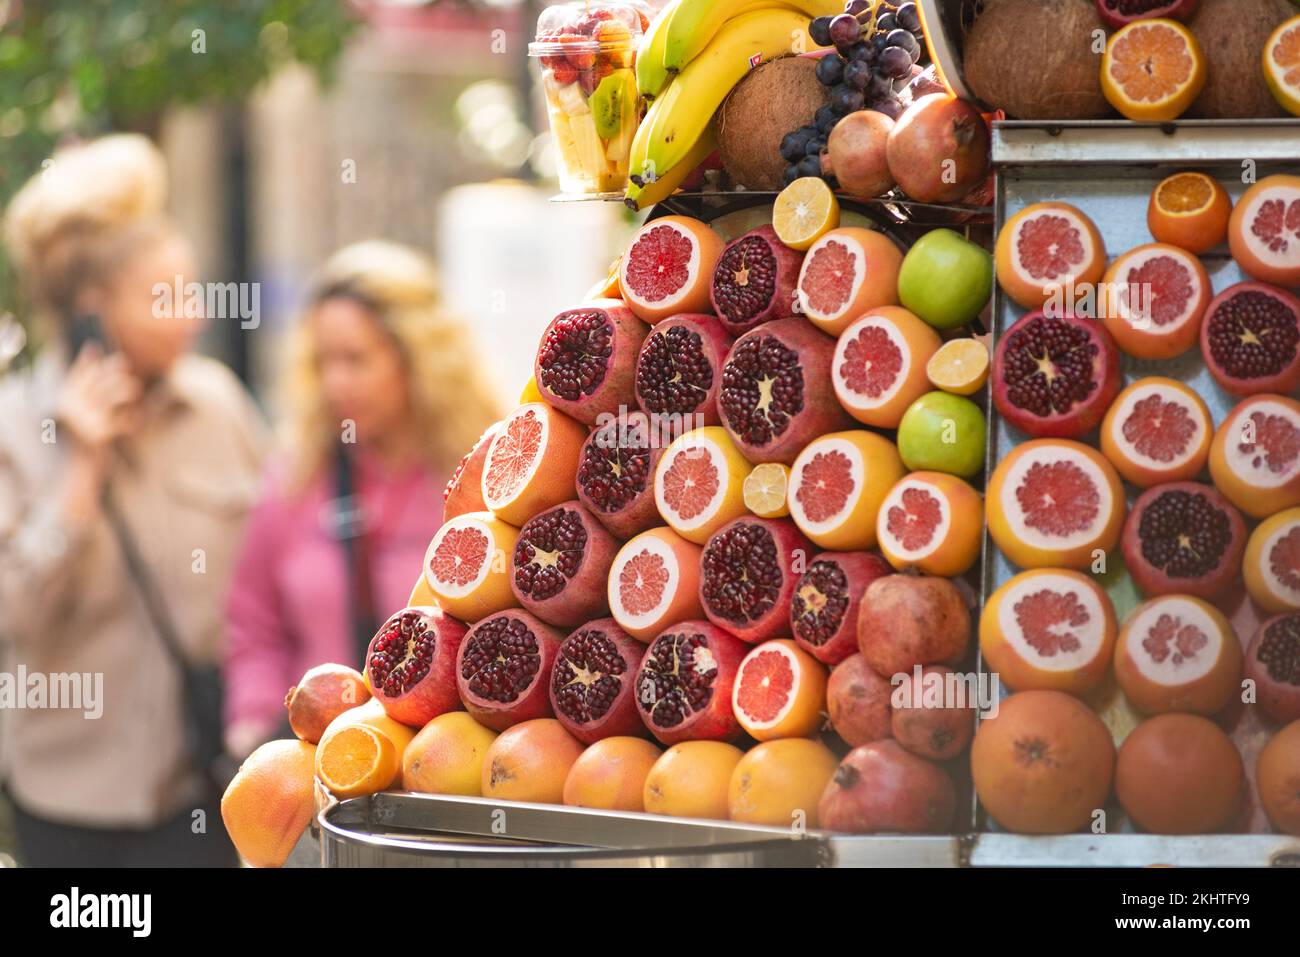 Frutta fresca e sana dai colori vivaci, come melograni e arance in vendita presso un juice stand a Istanbul, Turchia. Foto Stock